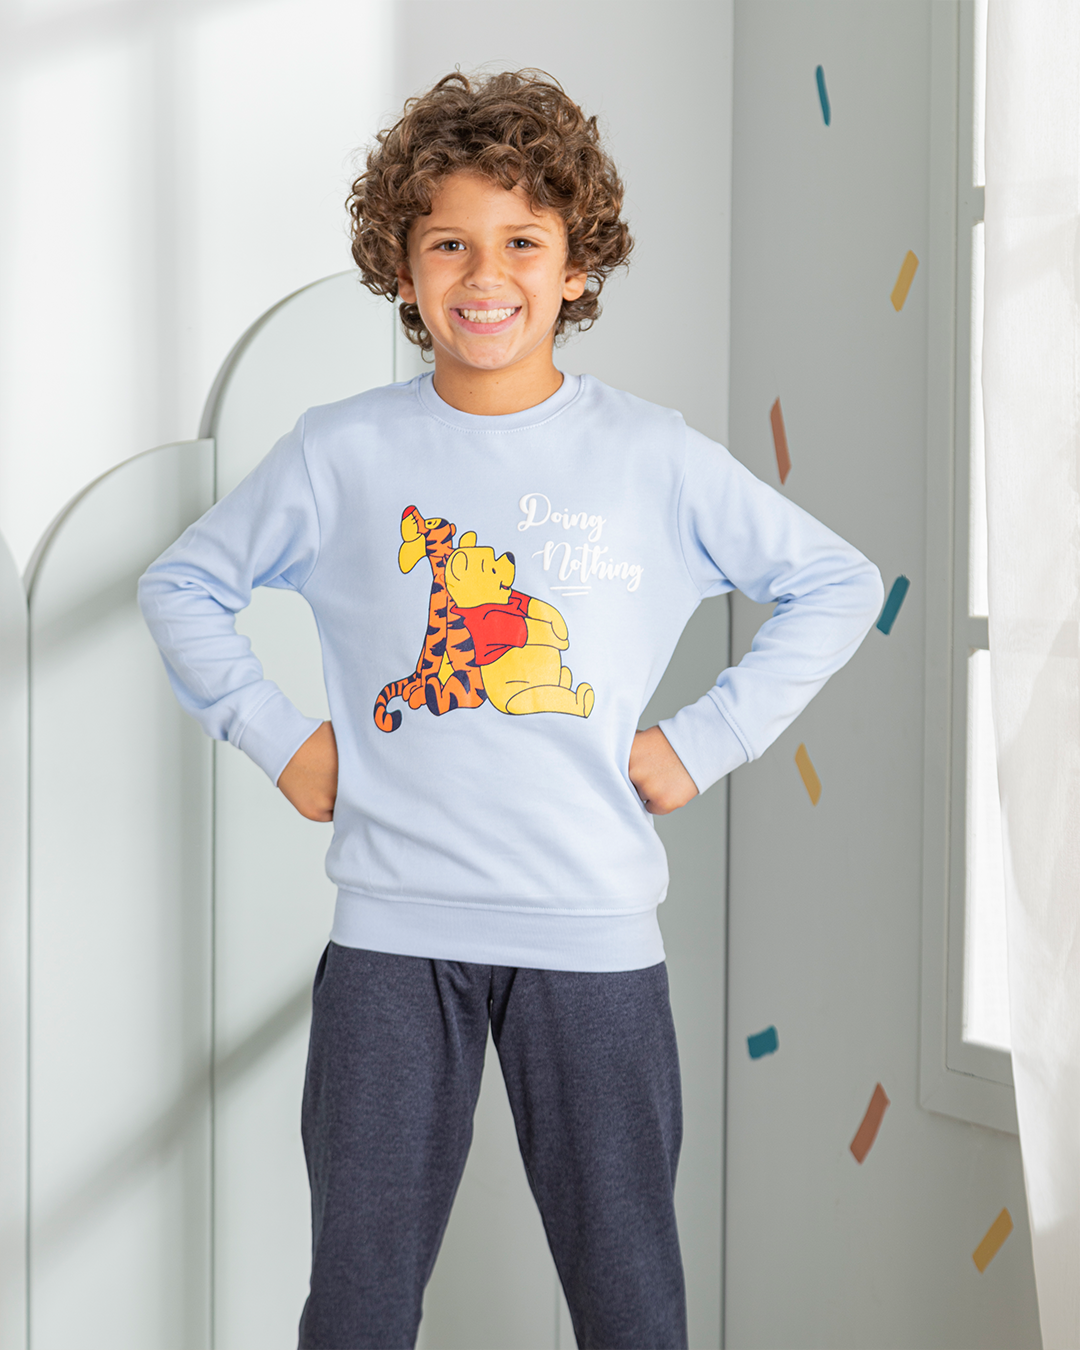 Pooh and tiger, my boys' pajamas